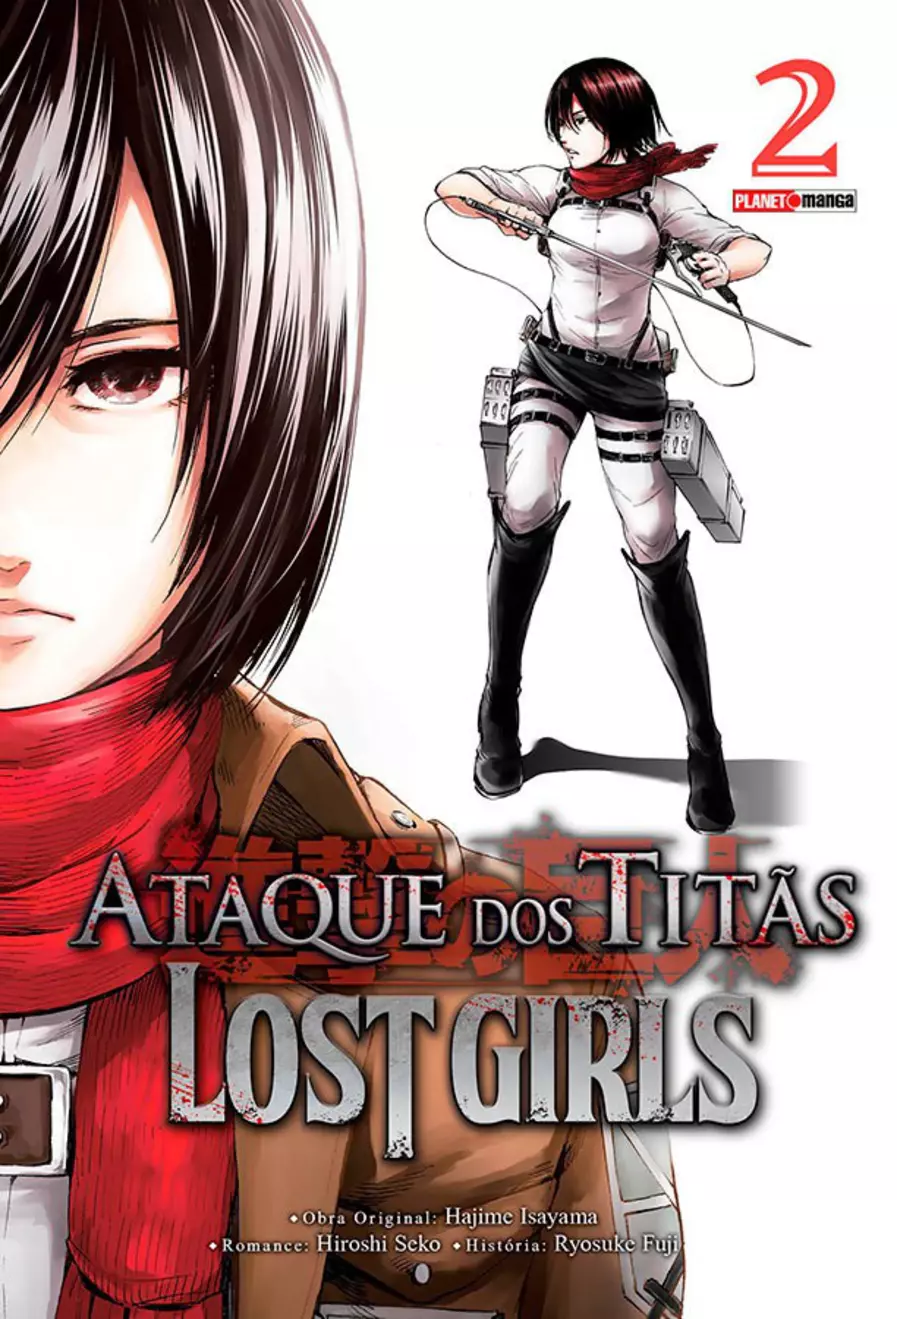 Ataque dos Titãs: Lost Girls 02 - Reboot Comic Store